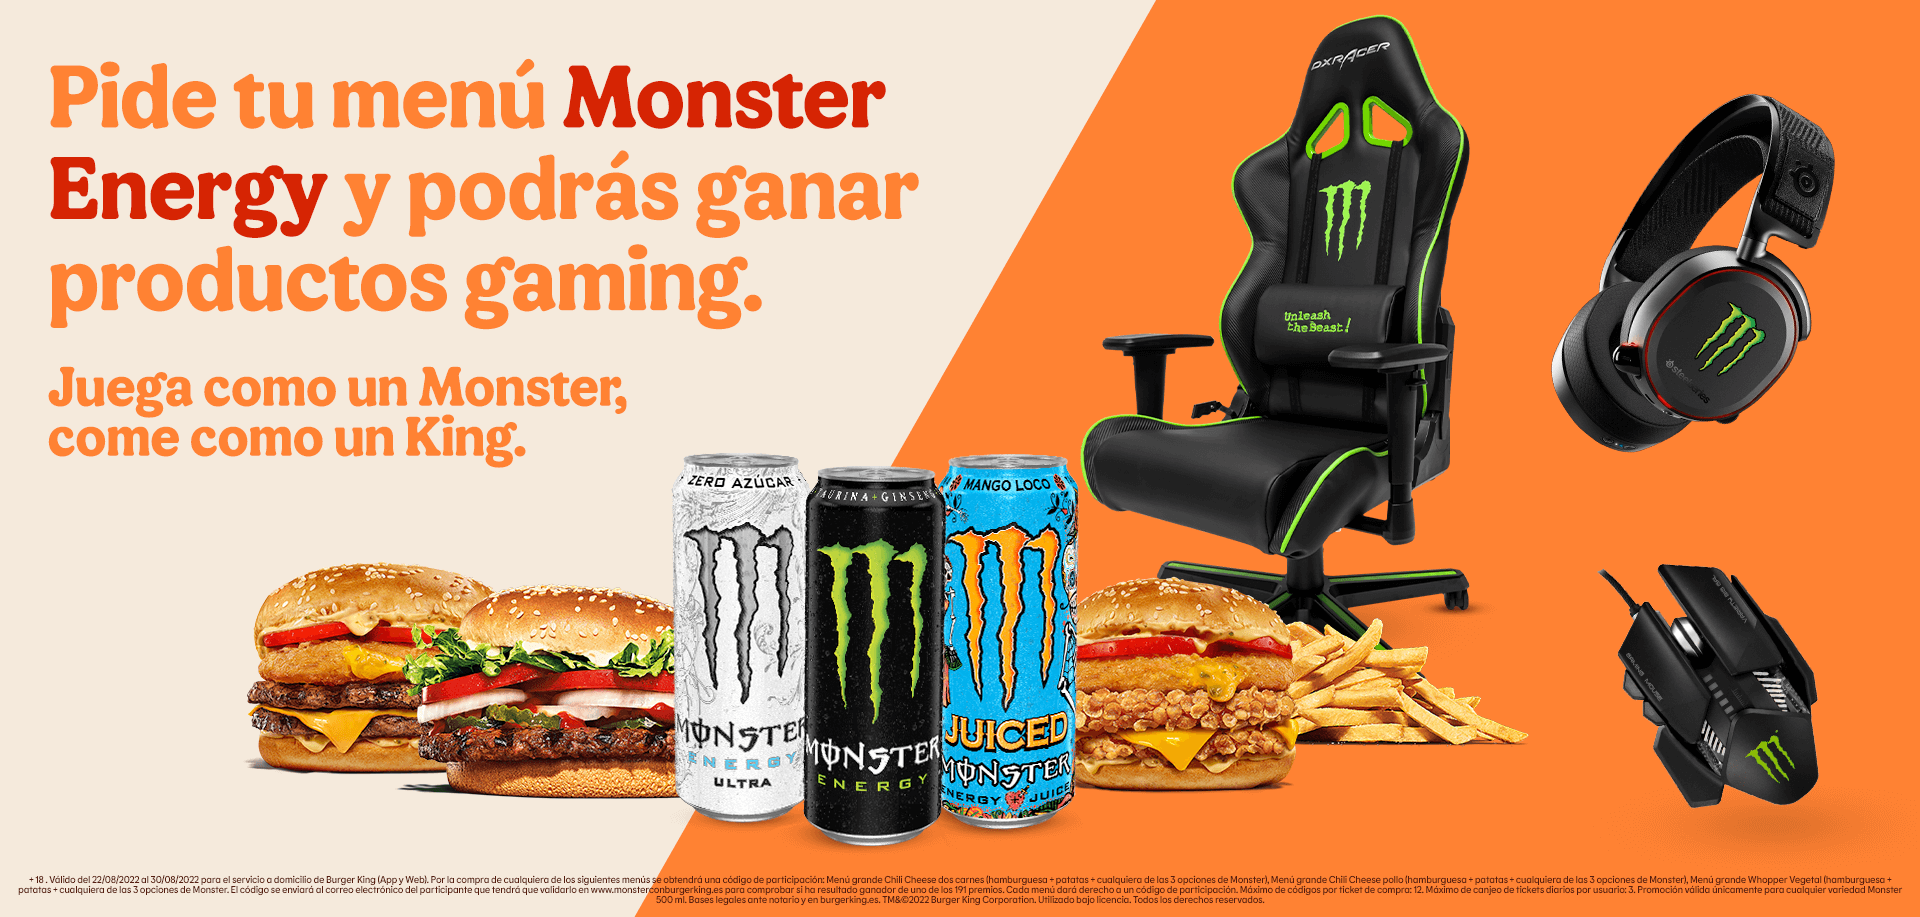 Premios gaming Monster Gamer (auriculares, ratones o sillas gaming) gratis con la compra de menús Monster Energy seleccionados